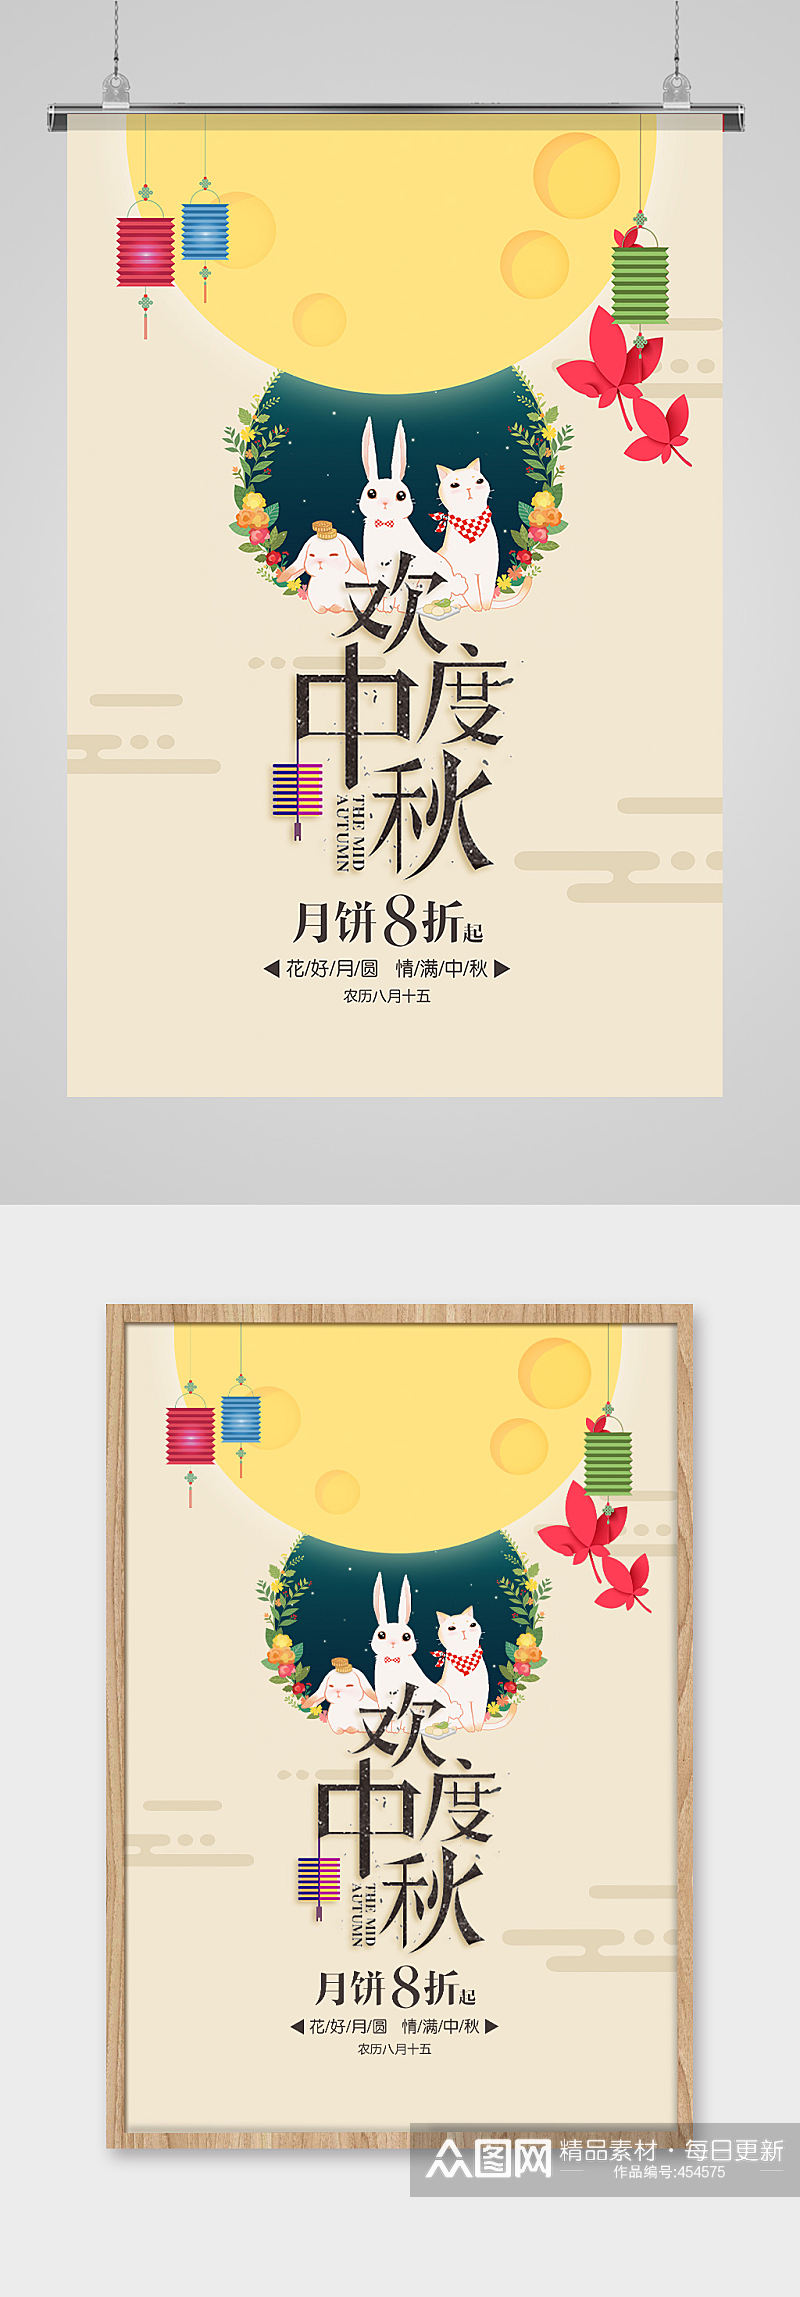 中秋佳节月饼促销海报设计素材